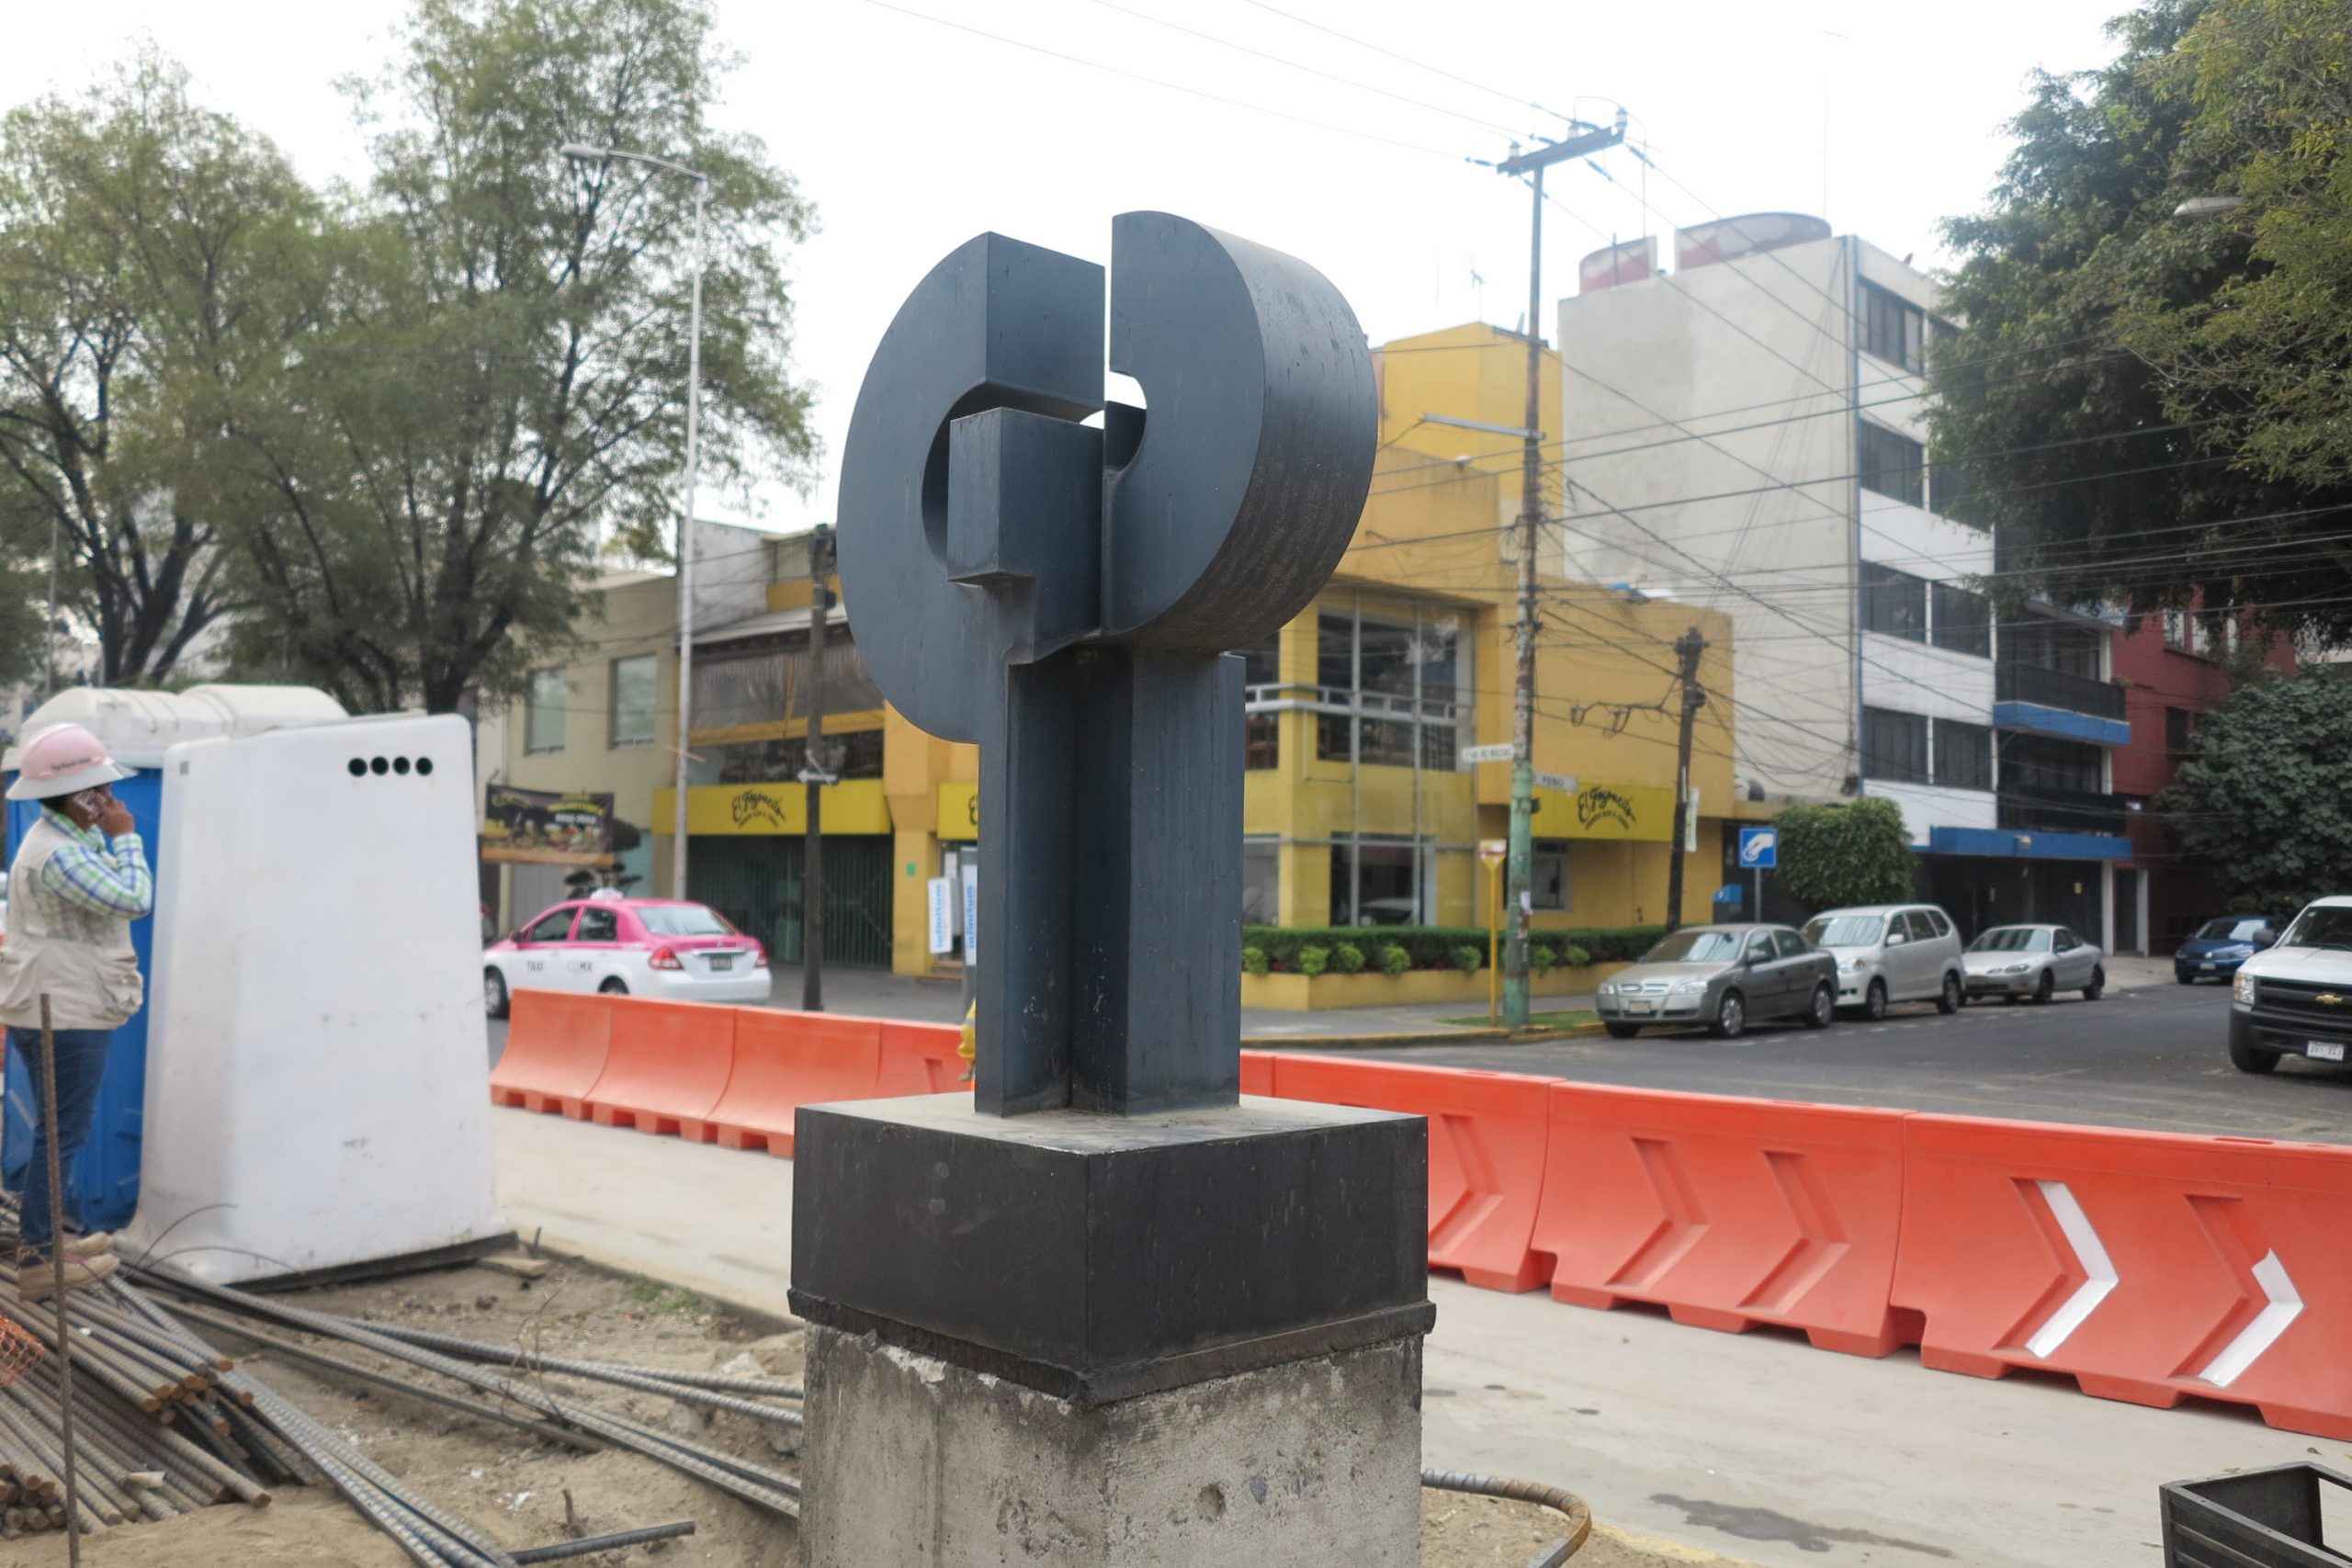 Deprimido en Mixcoac elevará el costo de vivienda - Esculturas Mixcoac 01 scaled